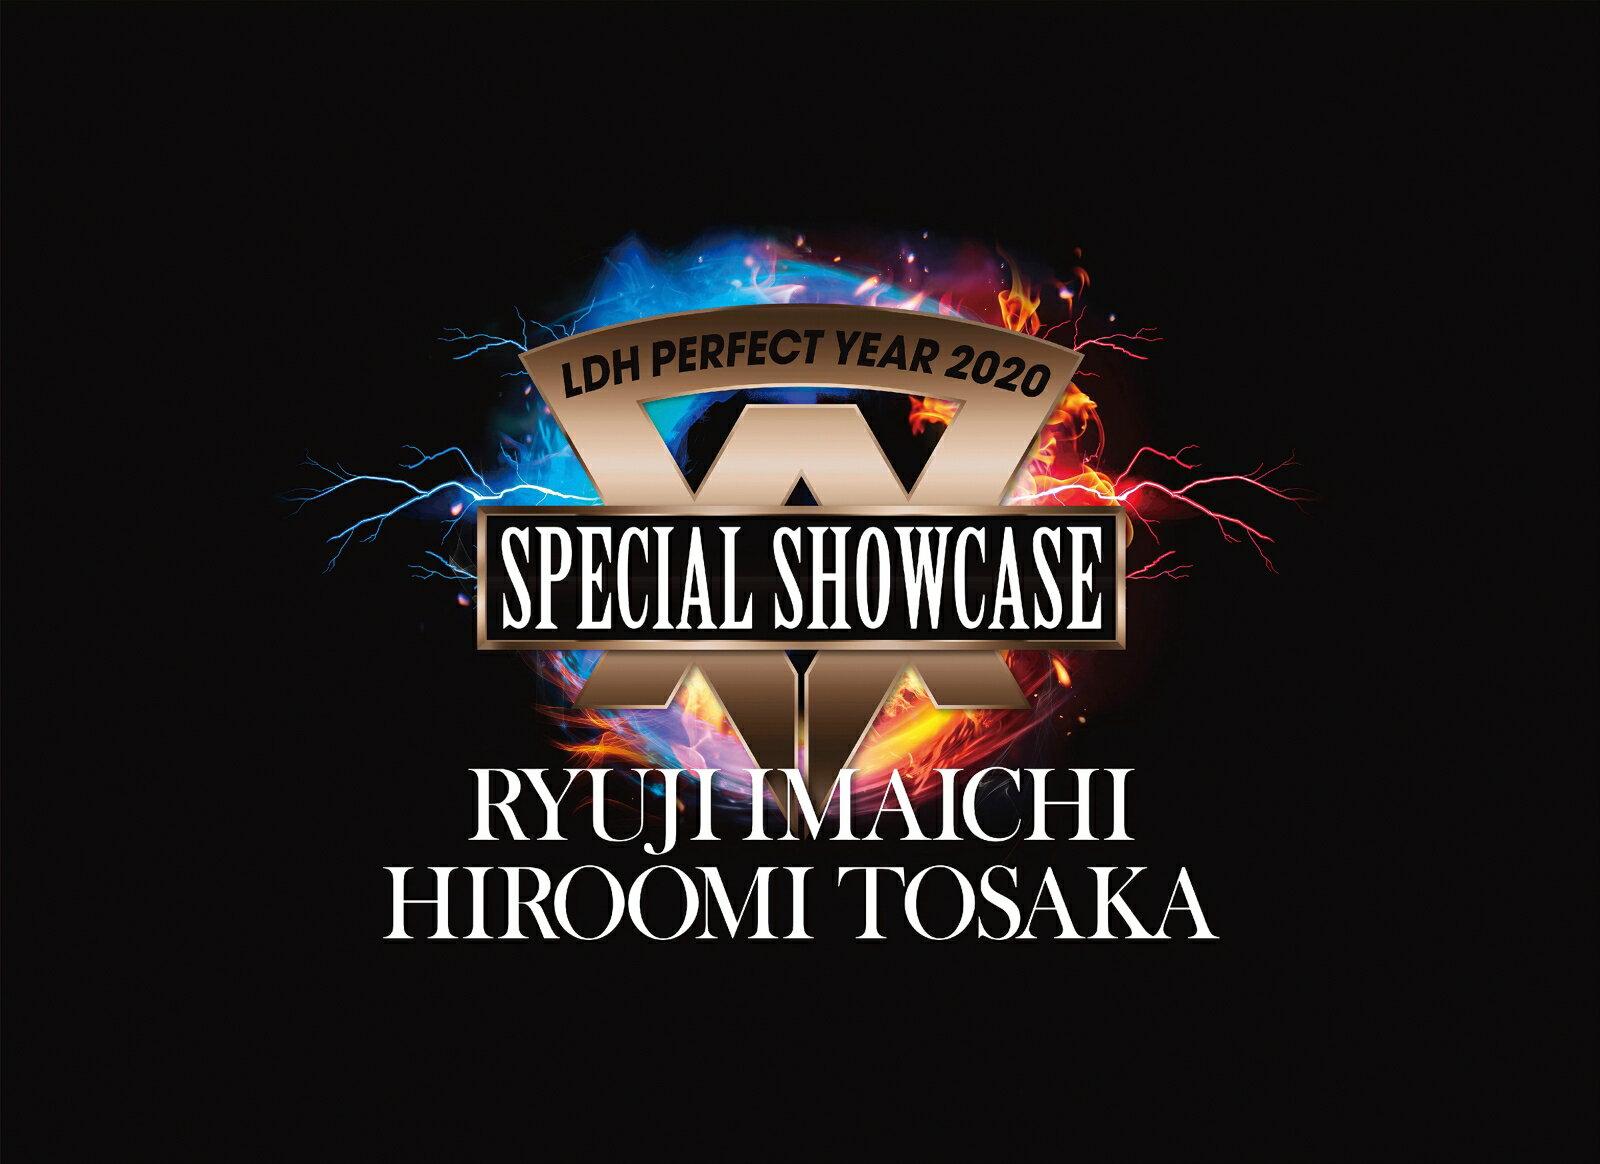 楽天楽天ブックスLDH PERFECT YEAR 2020 SPECIAL SHOWCASE RYUJI IMAICHI / HIROOMI TOSAKA [ RYUJI IMAICHI/HIROOMI TOSAKA ]